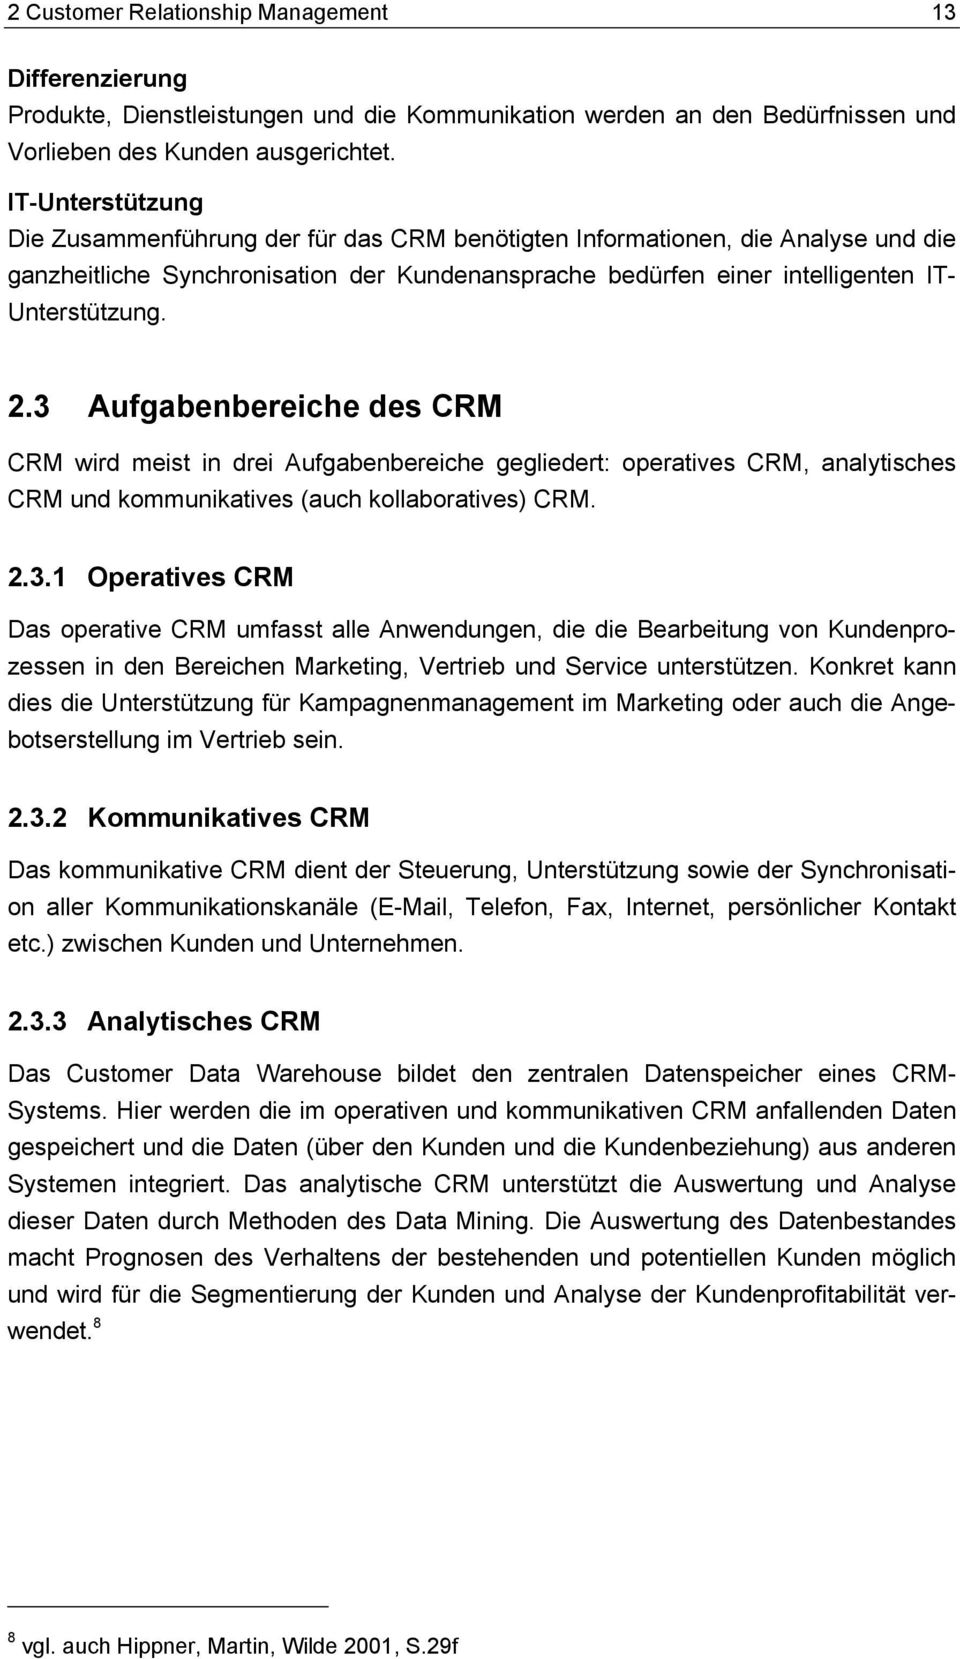 3 Aufgabenbereiche des CRM CRM wird meist in drei Aufgabenbereiche gegliedert: operatives CRM, analytisches CRM und kommunikatives (auch kollaboratives) CRM. 2.3.1 Operatives CRM Das operative CRM umfasst alle Anwendungen, die die Bearbeitung von Kundenprozessen in den Bereichen Marketing, Vertrieb und Service unterstützen.